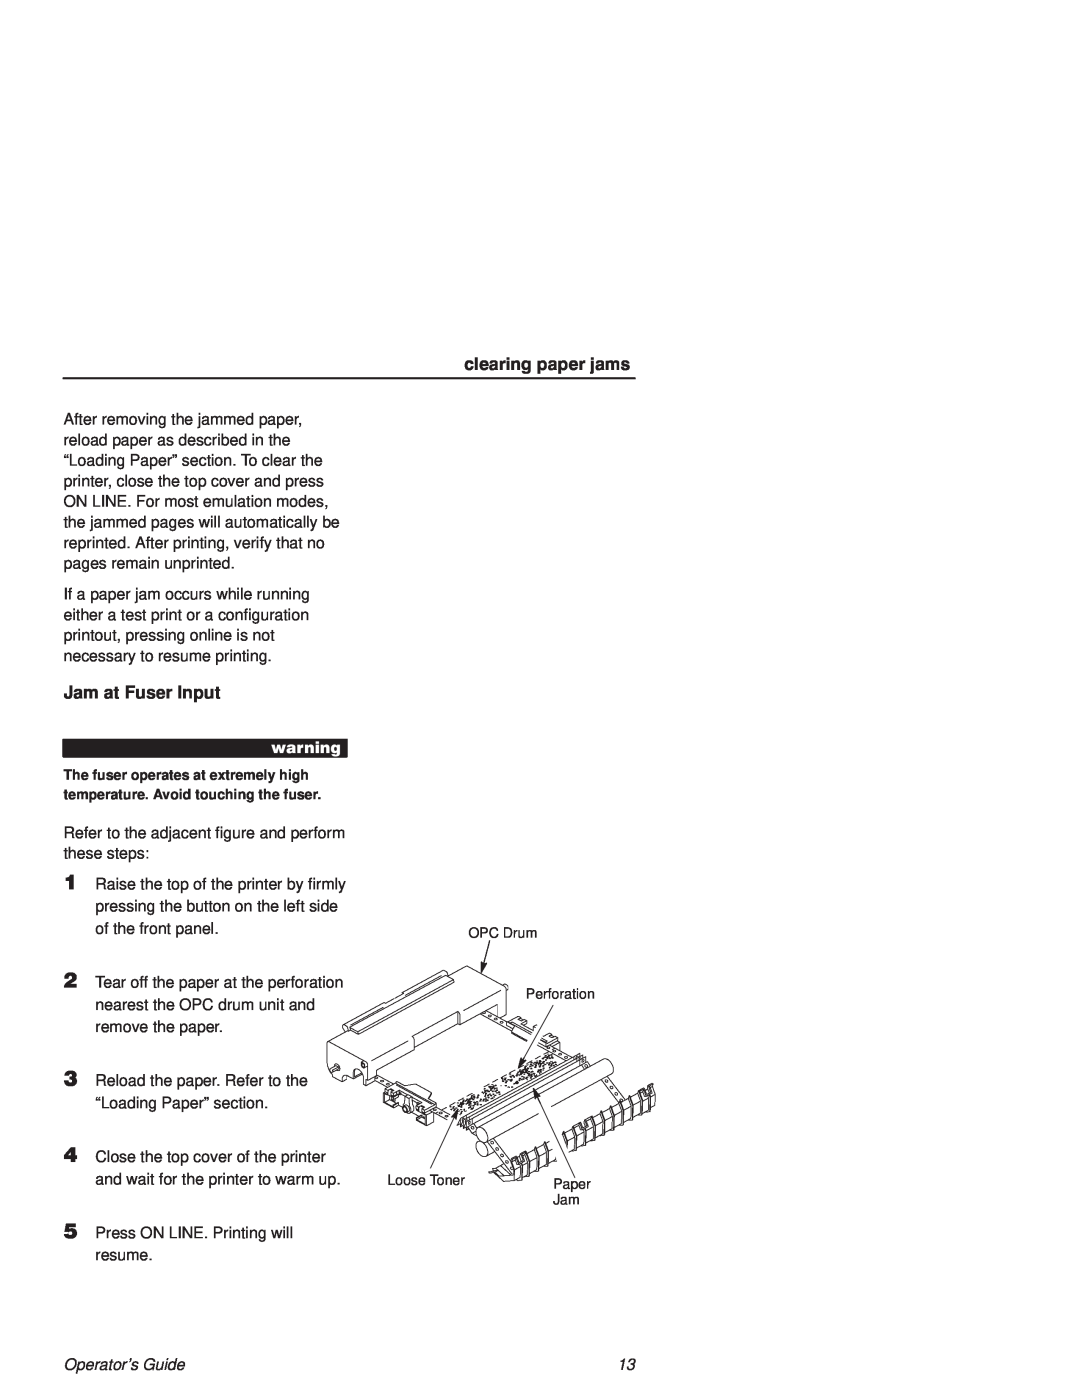 Printronix L1524 manual clearing paper jams, Jam at Fuser Input, Operators Guide 